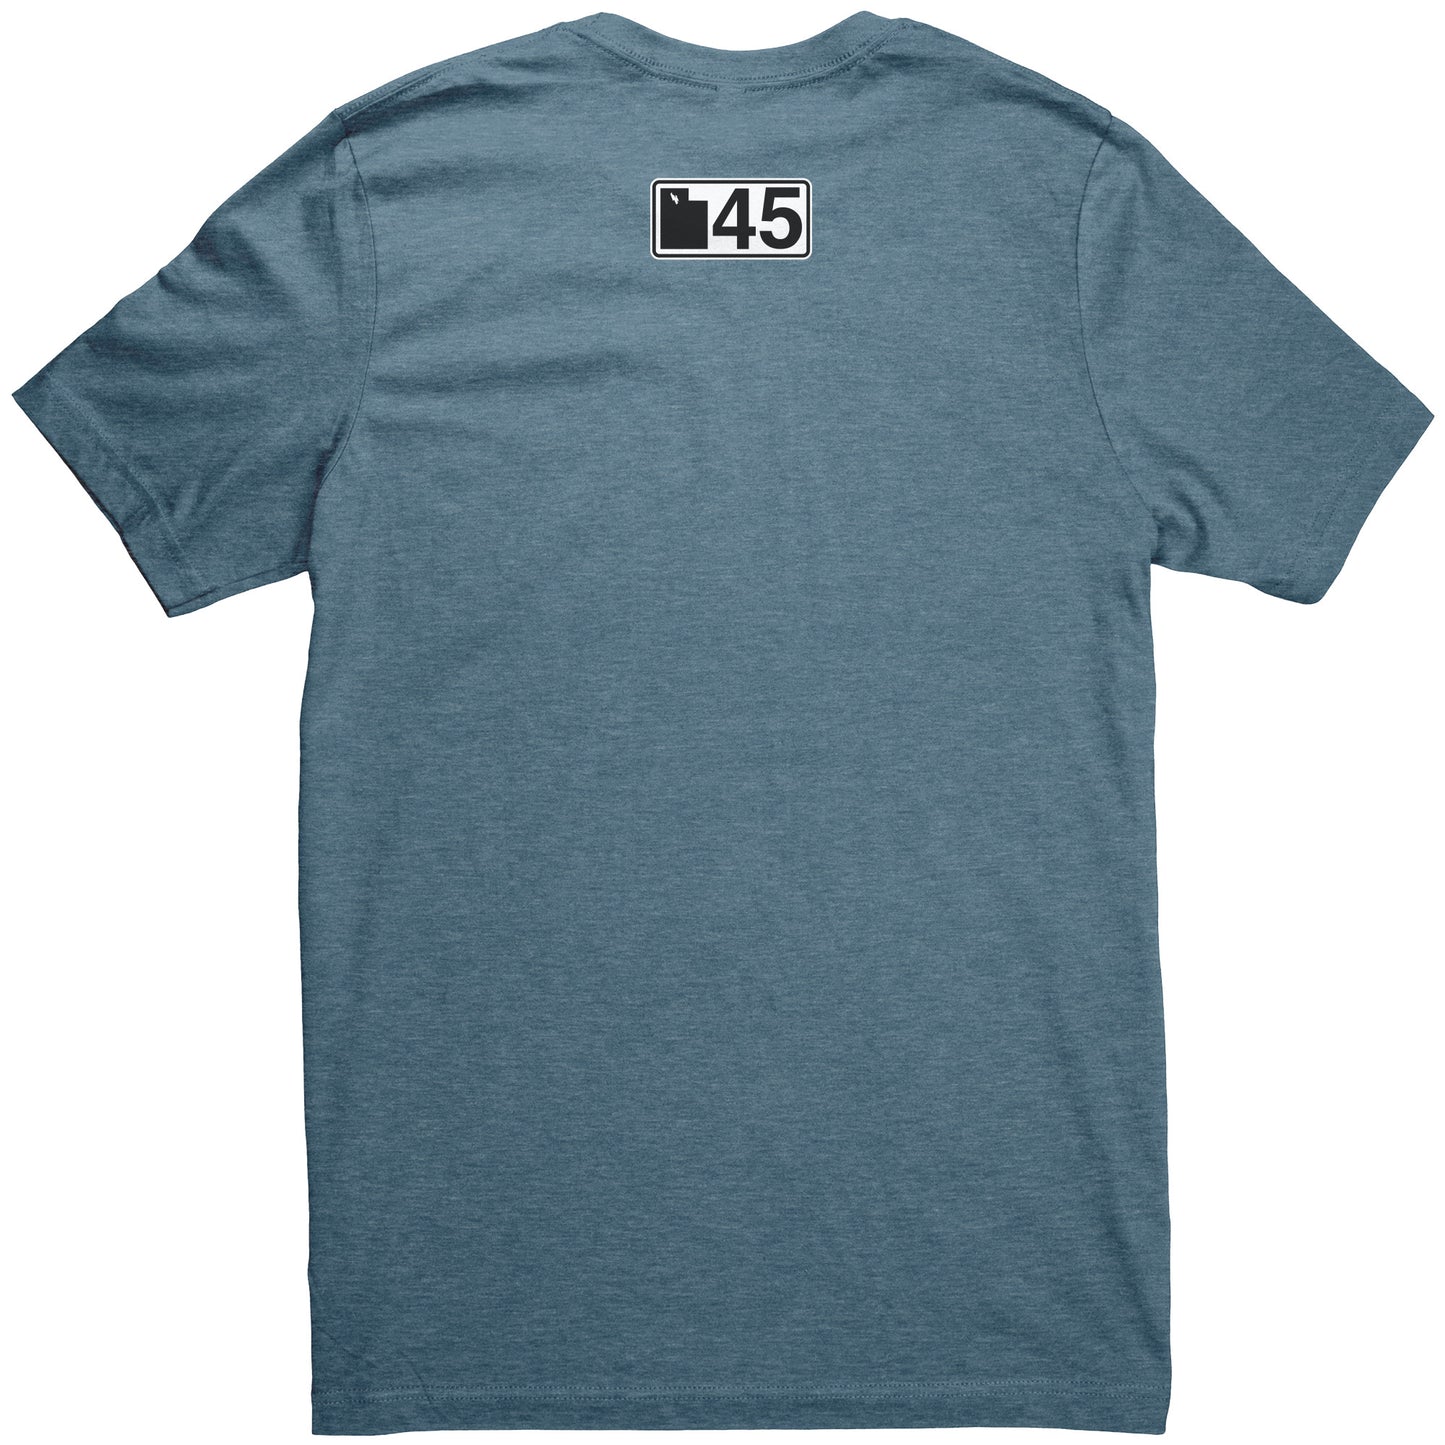 UT45 Comfy T-Shirt